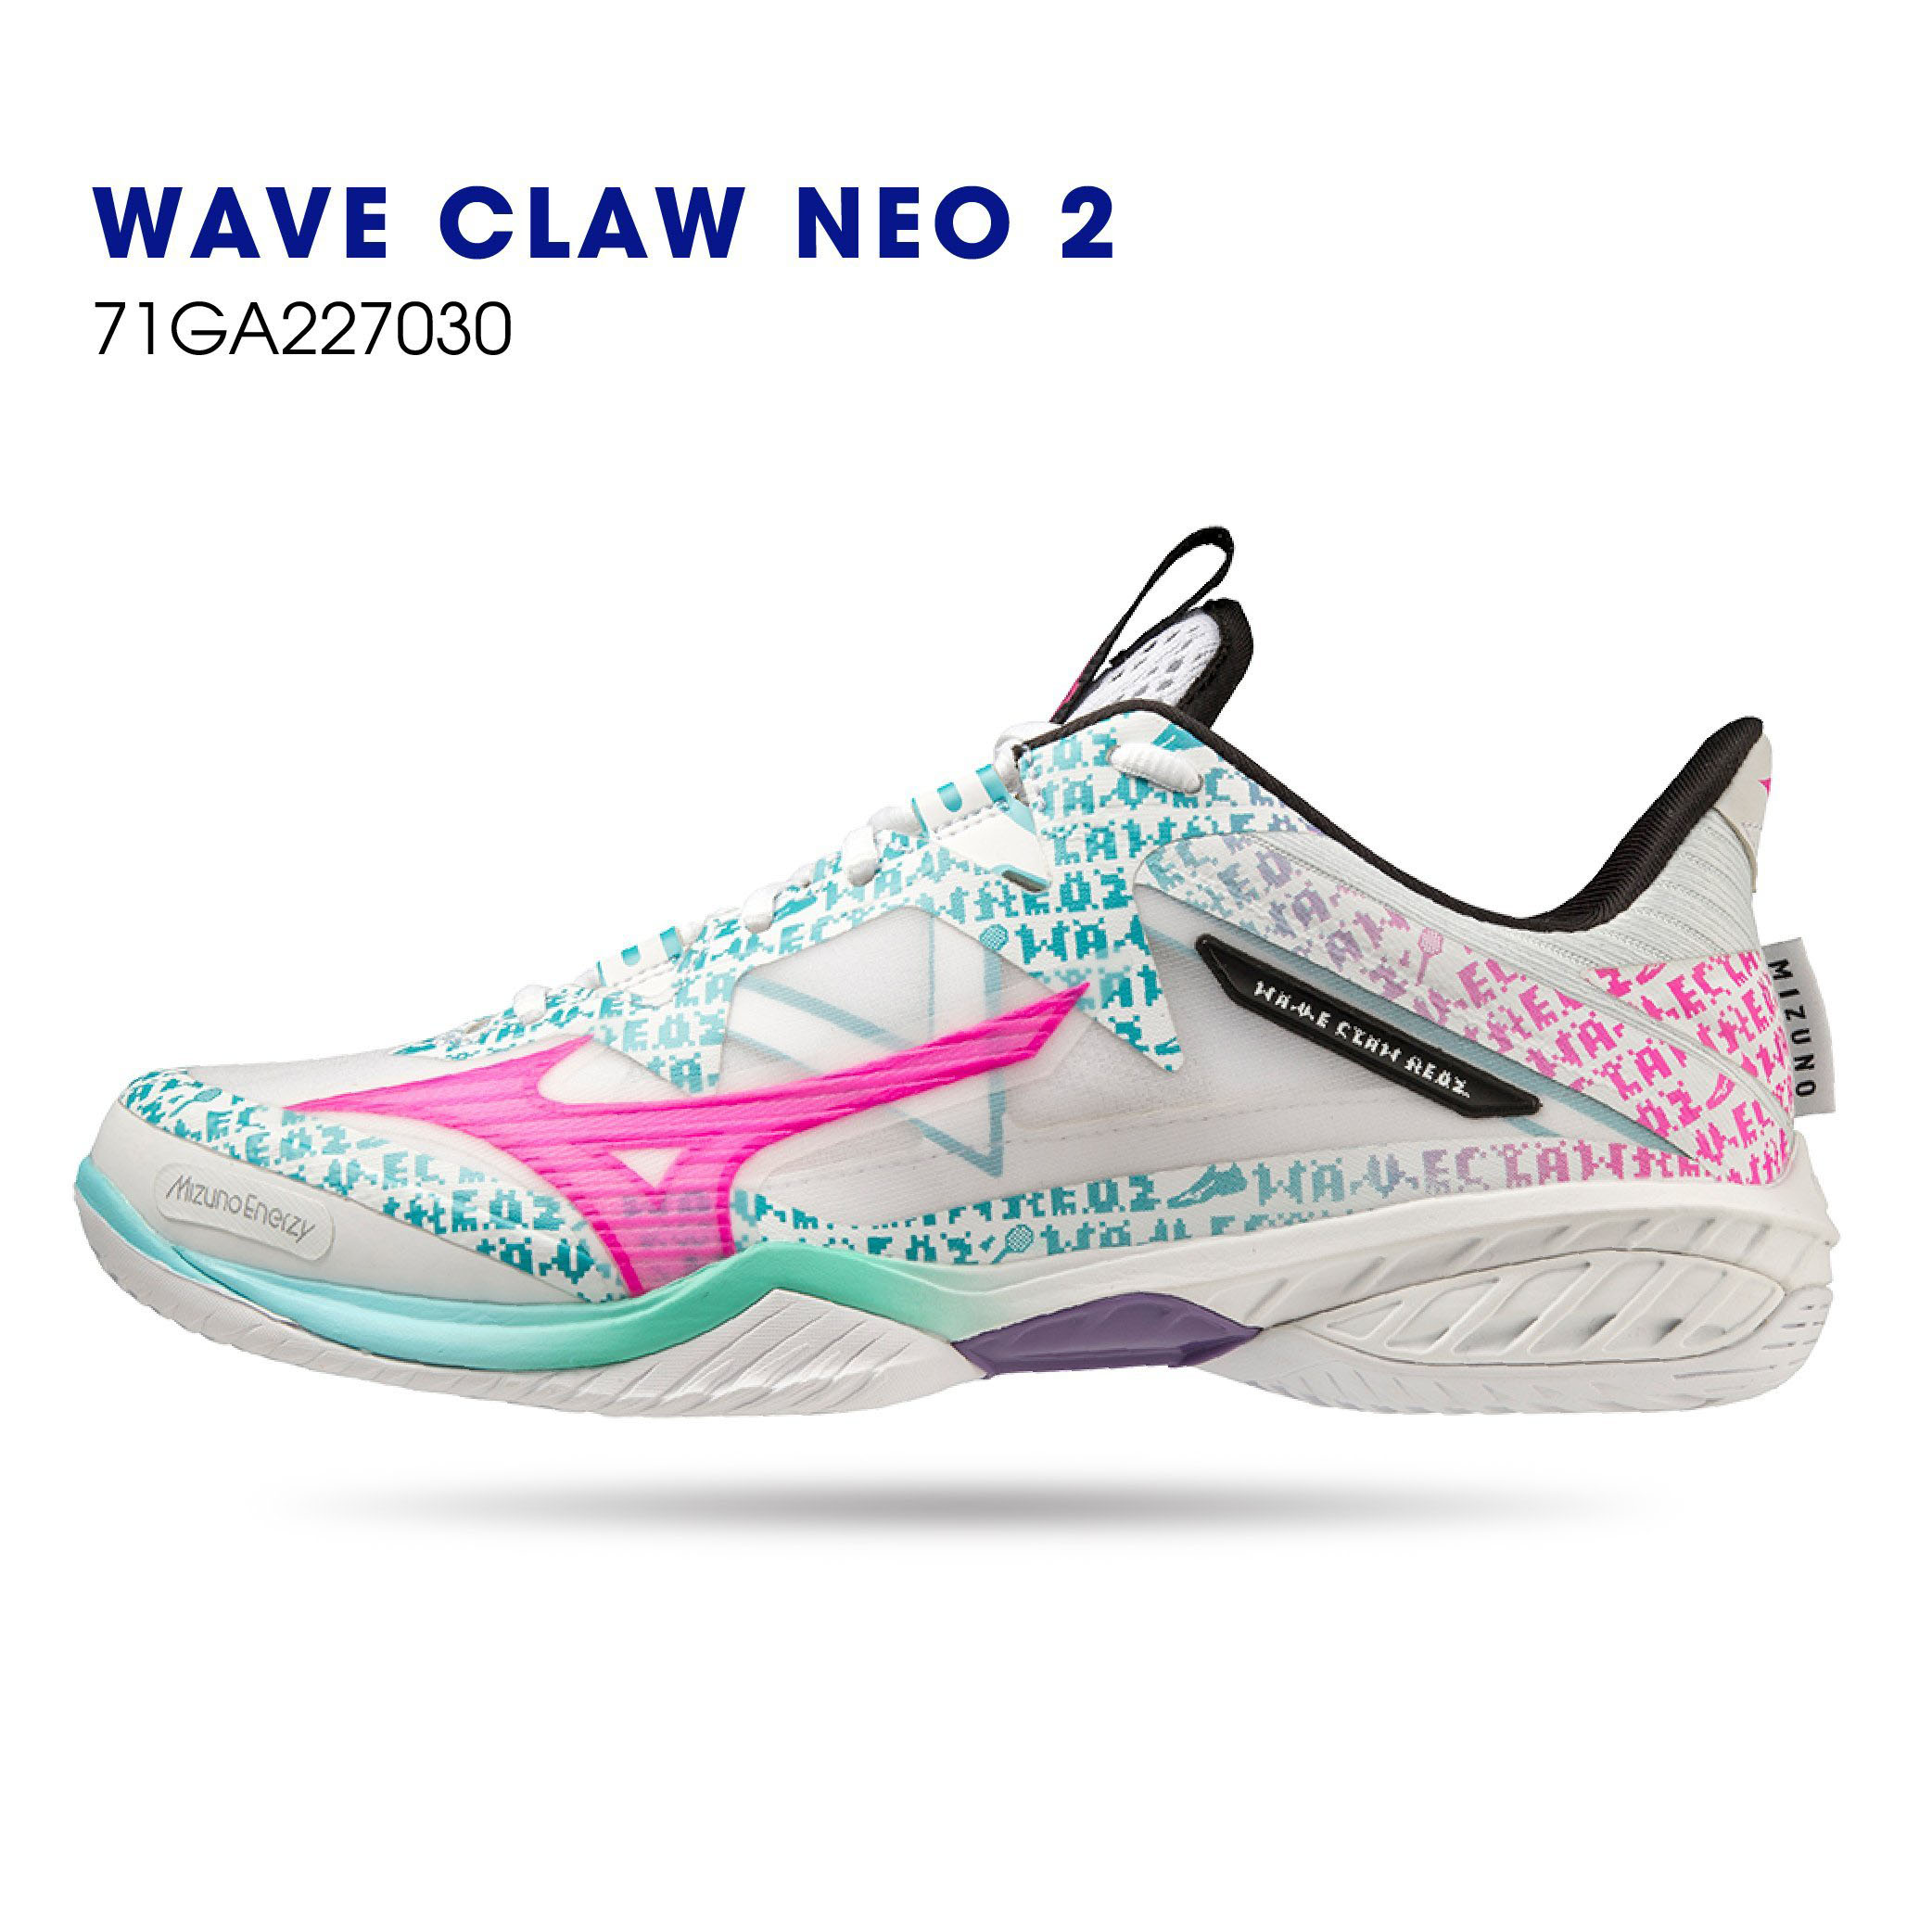 Giày cầu lông Mizuno Wave Claw neo 2 chính hãng chuyên nghiệp cho cả nam